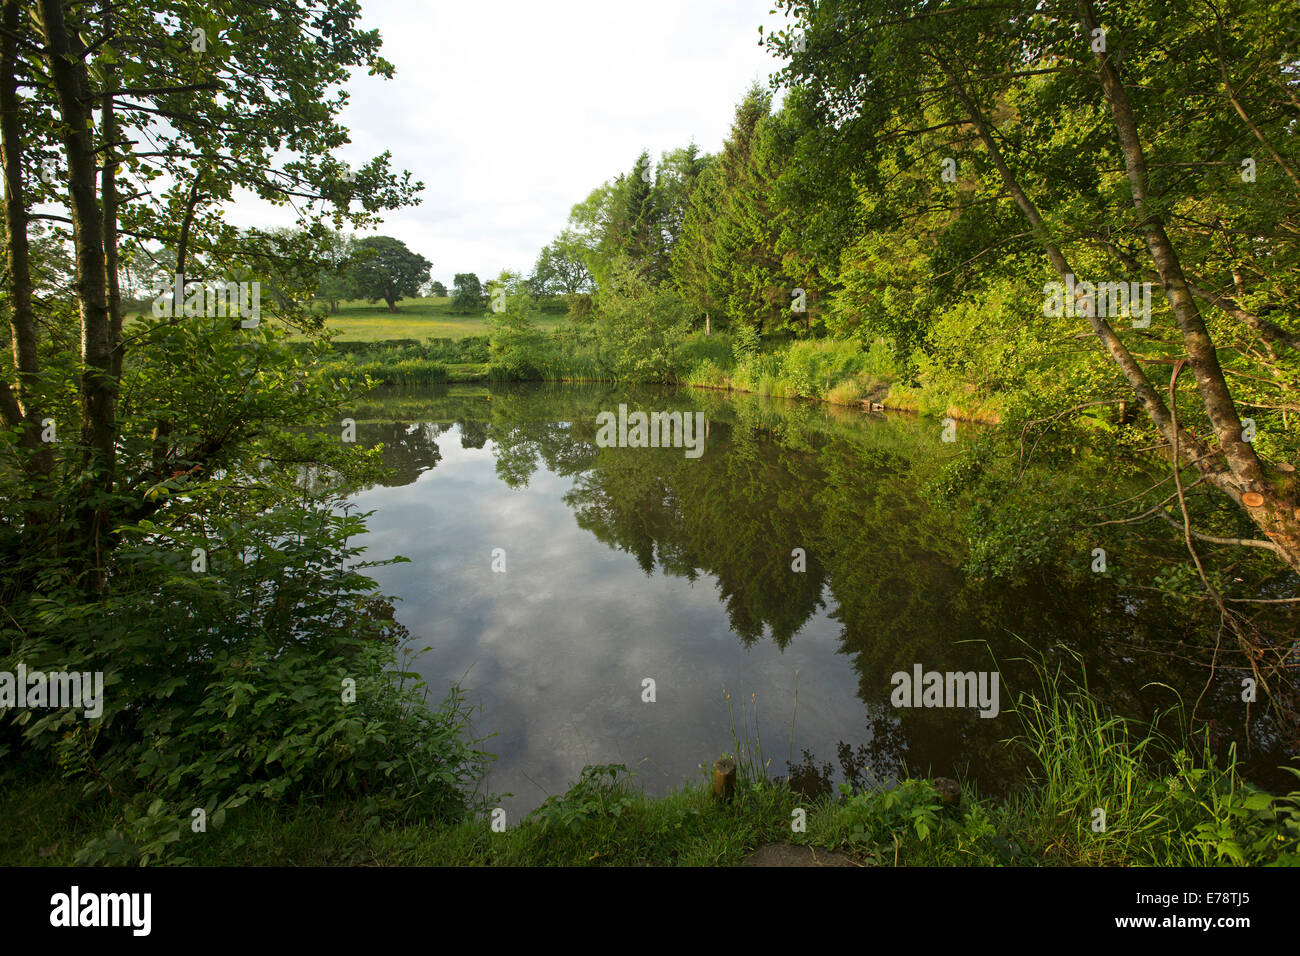 Basto estanque en inglés granja con bosques circundantes y el azul del cielo reflejado en la calma superficie del espejo de agua Foto de stock